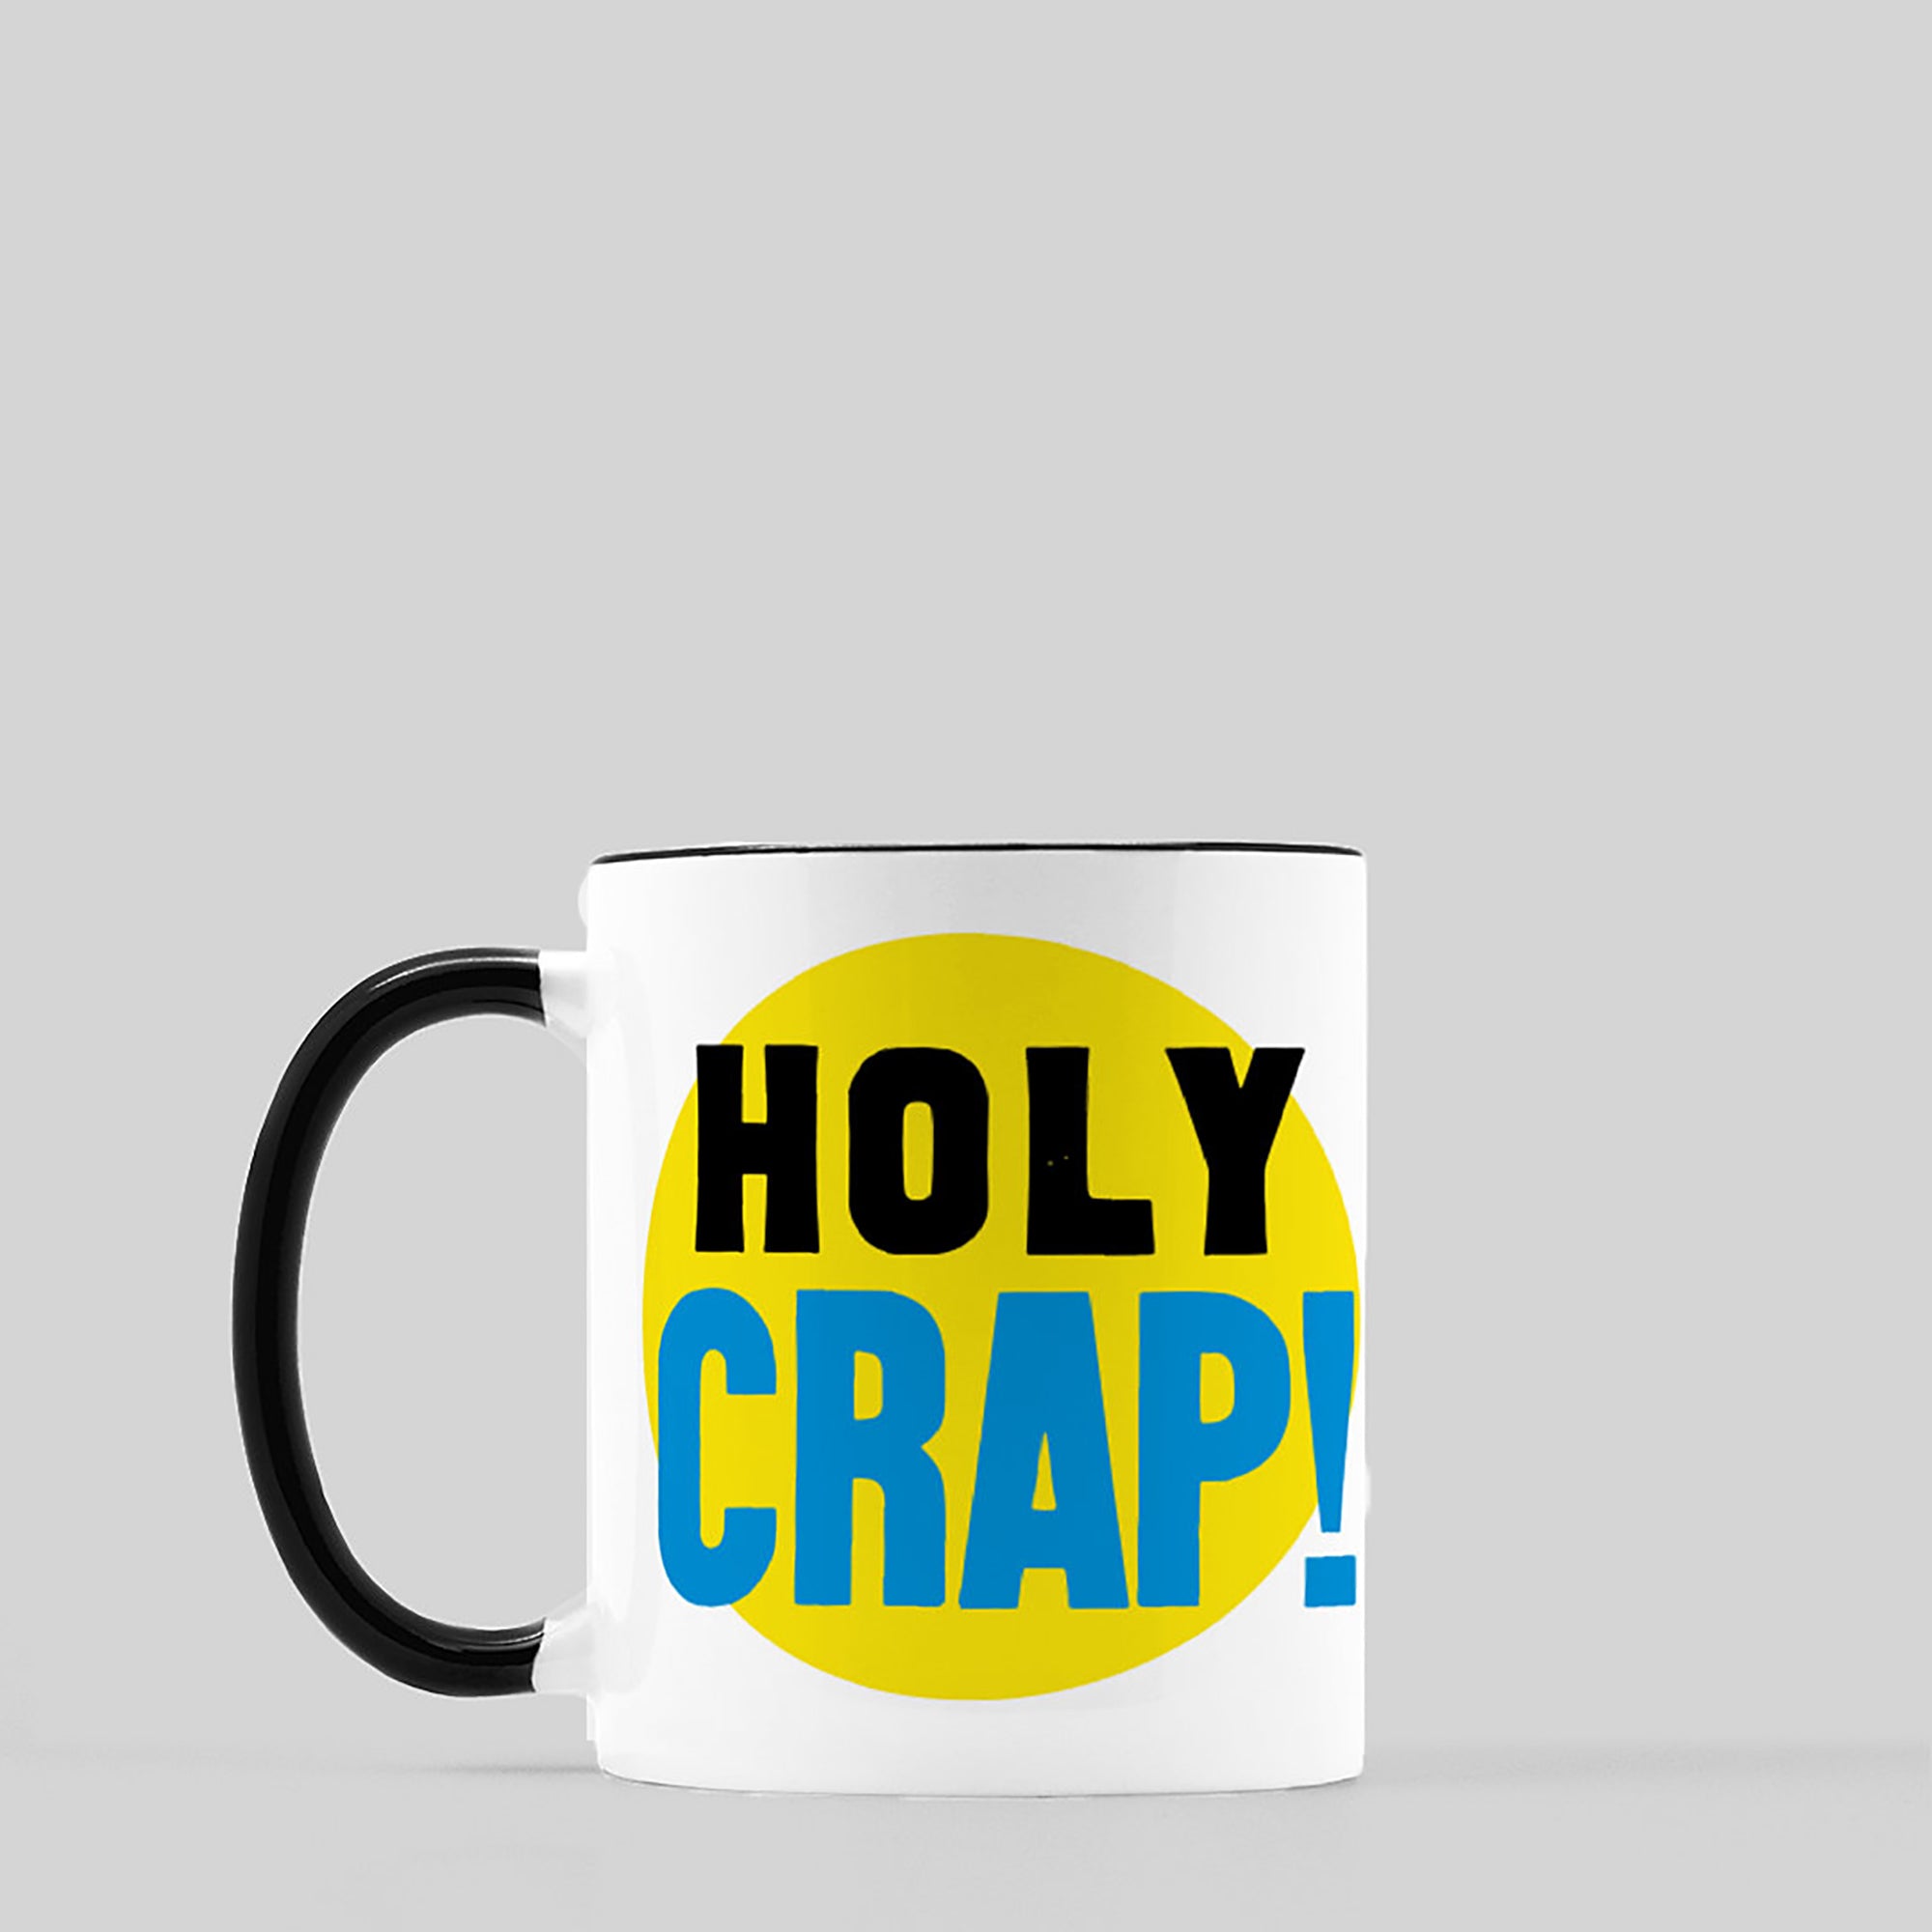 HOLY CRAP! Ceramic Coffee Mug, 11oz